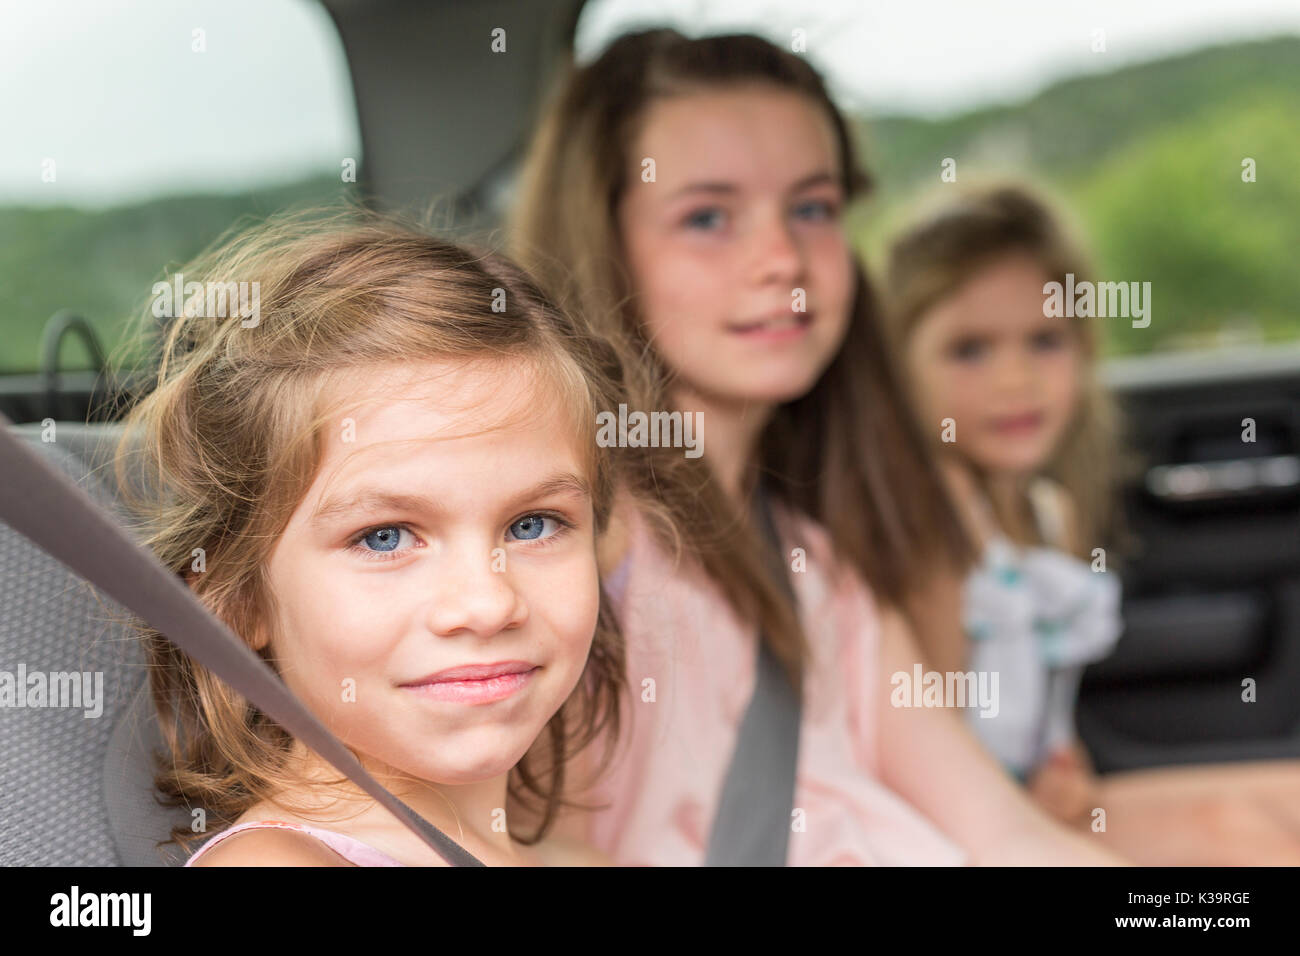 little girls inside car Stock Photo